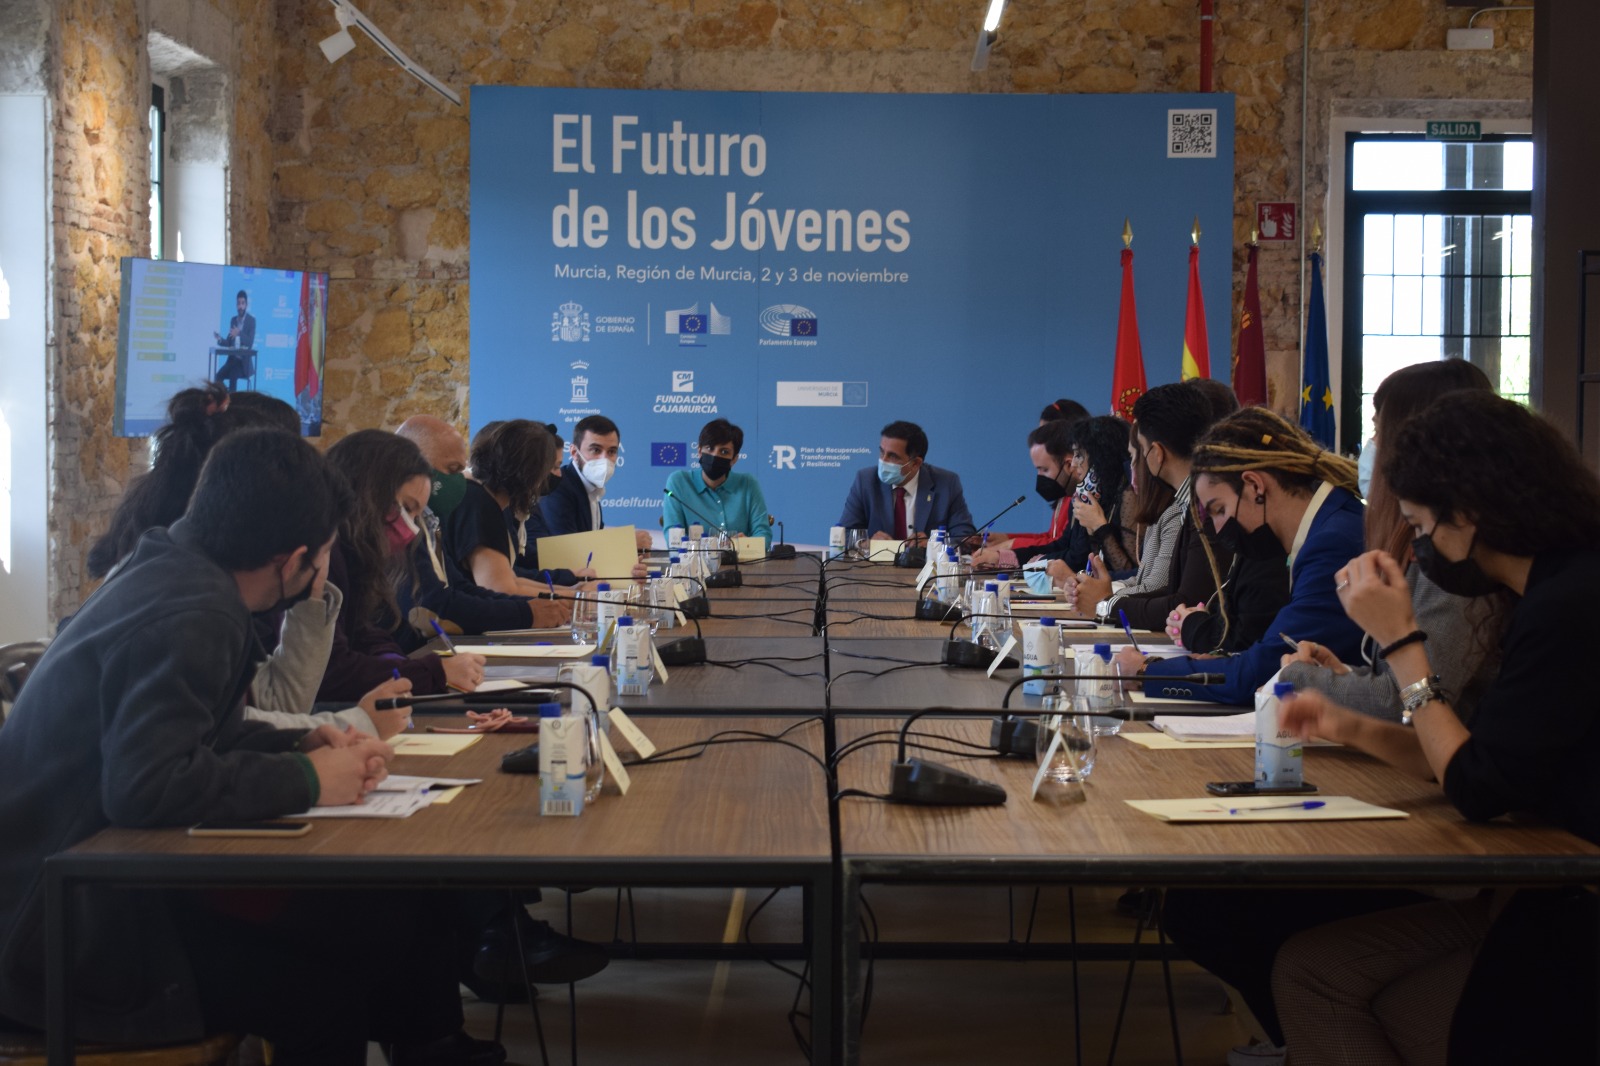 Jornadas en Murcia sobre el futuro de los jóvenes